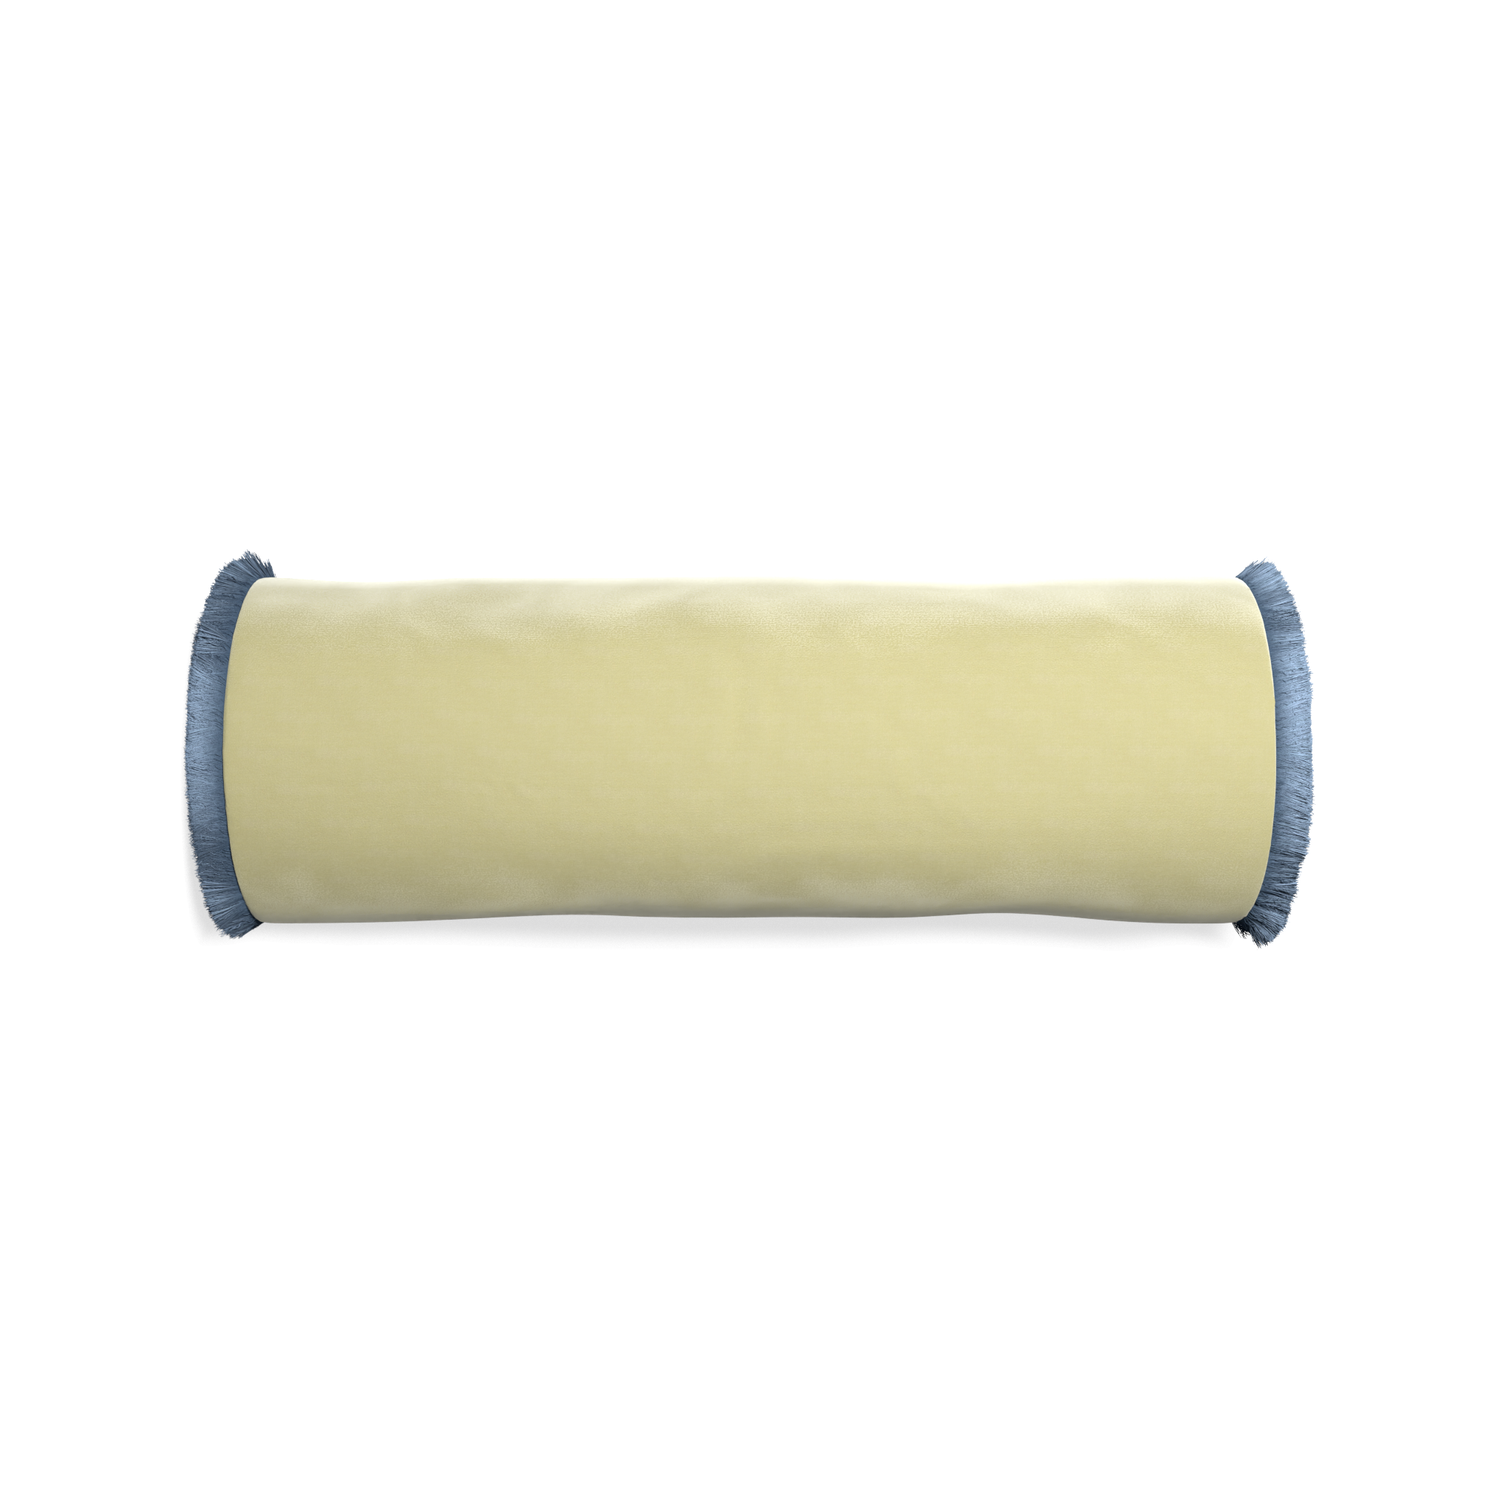 Bolster pear velvet custom pillow with sky fringe on white background